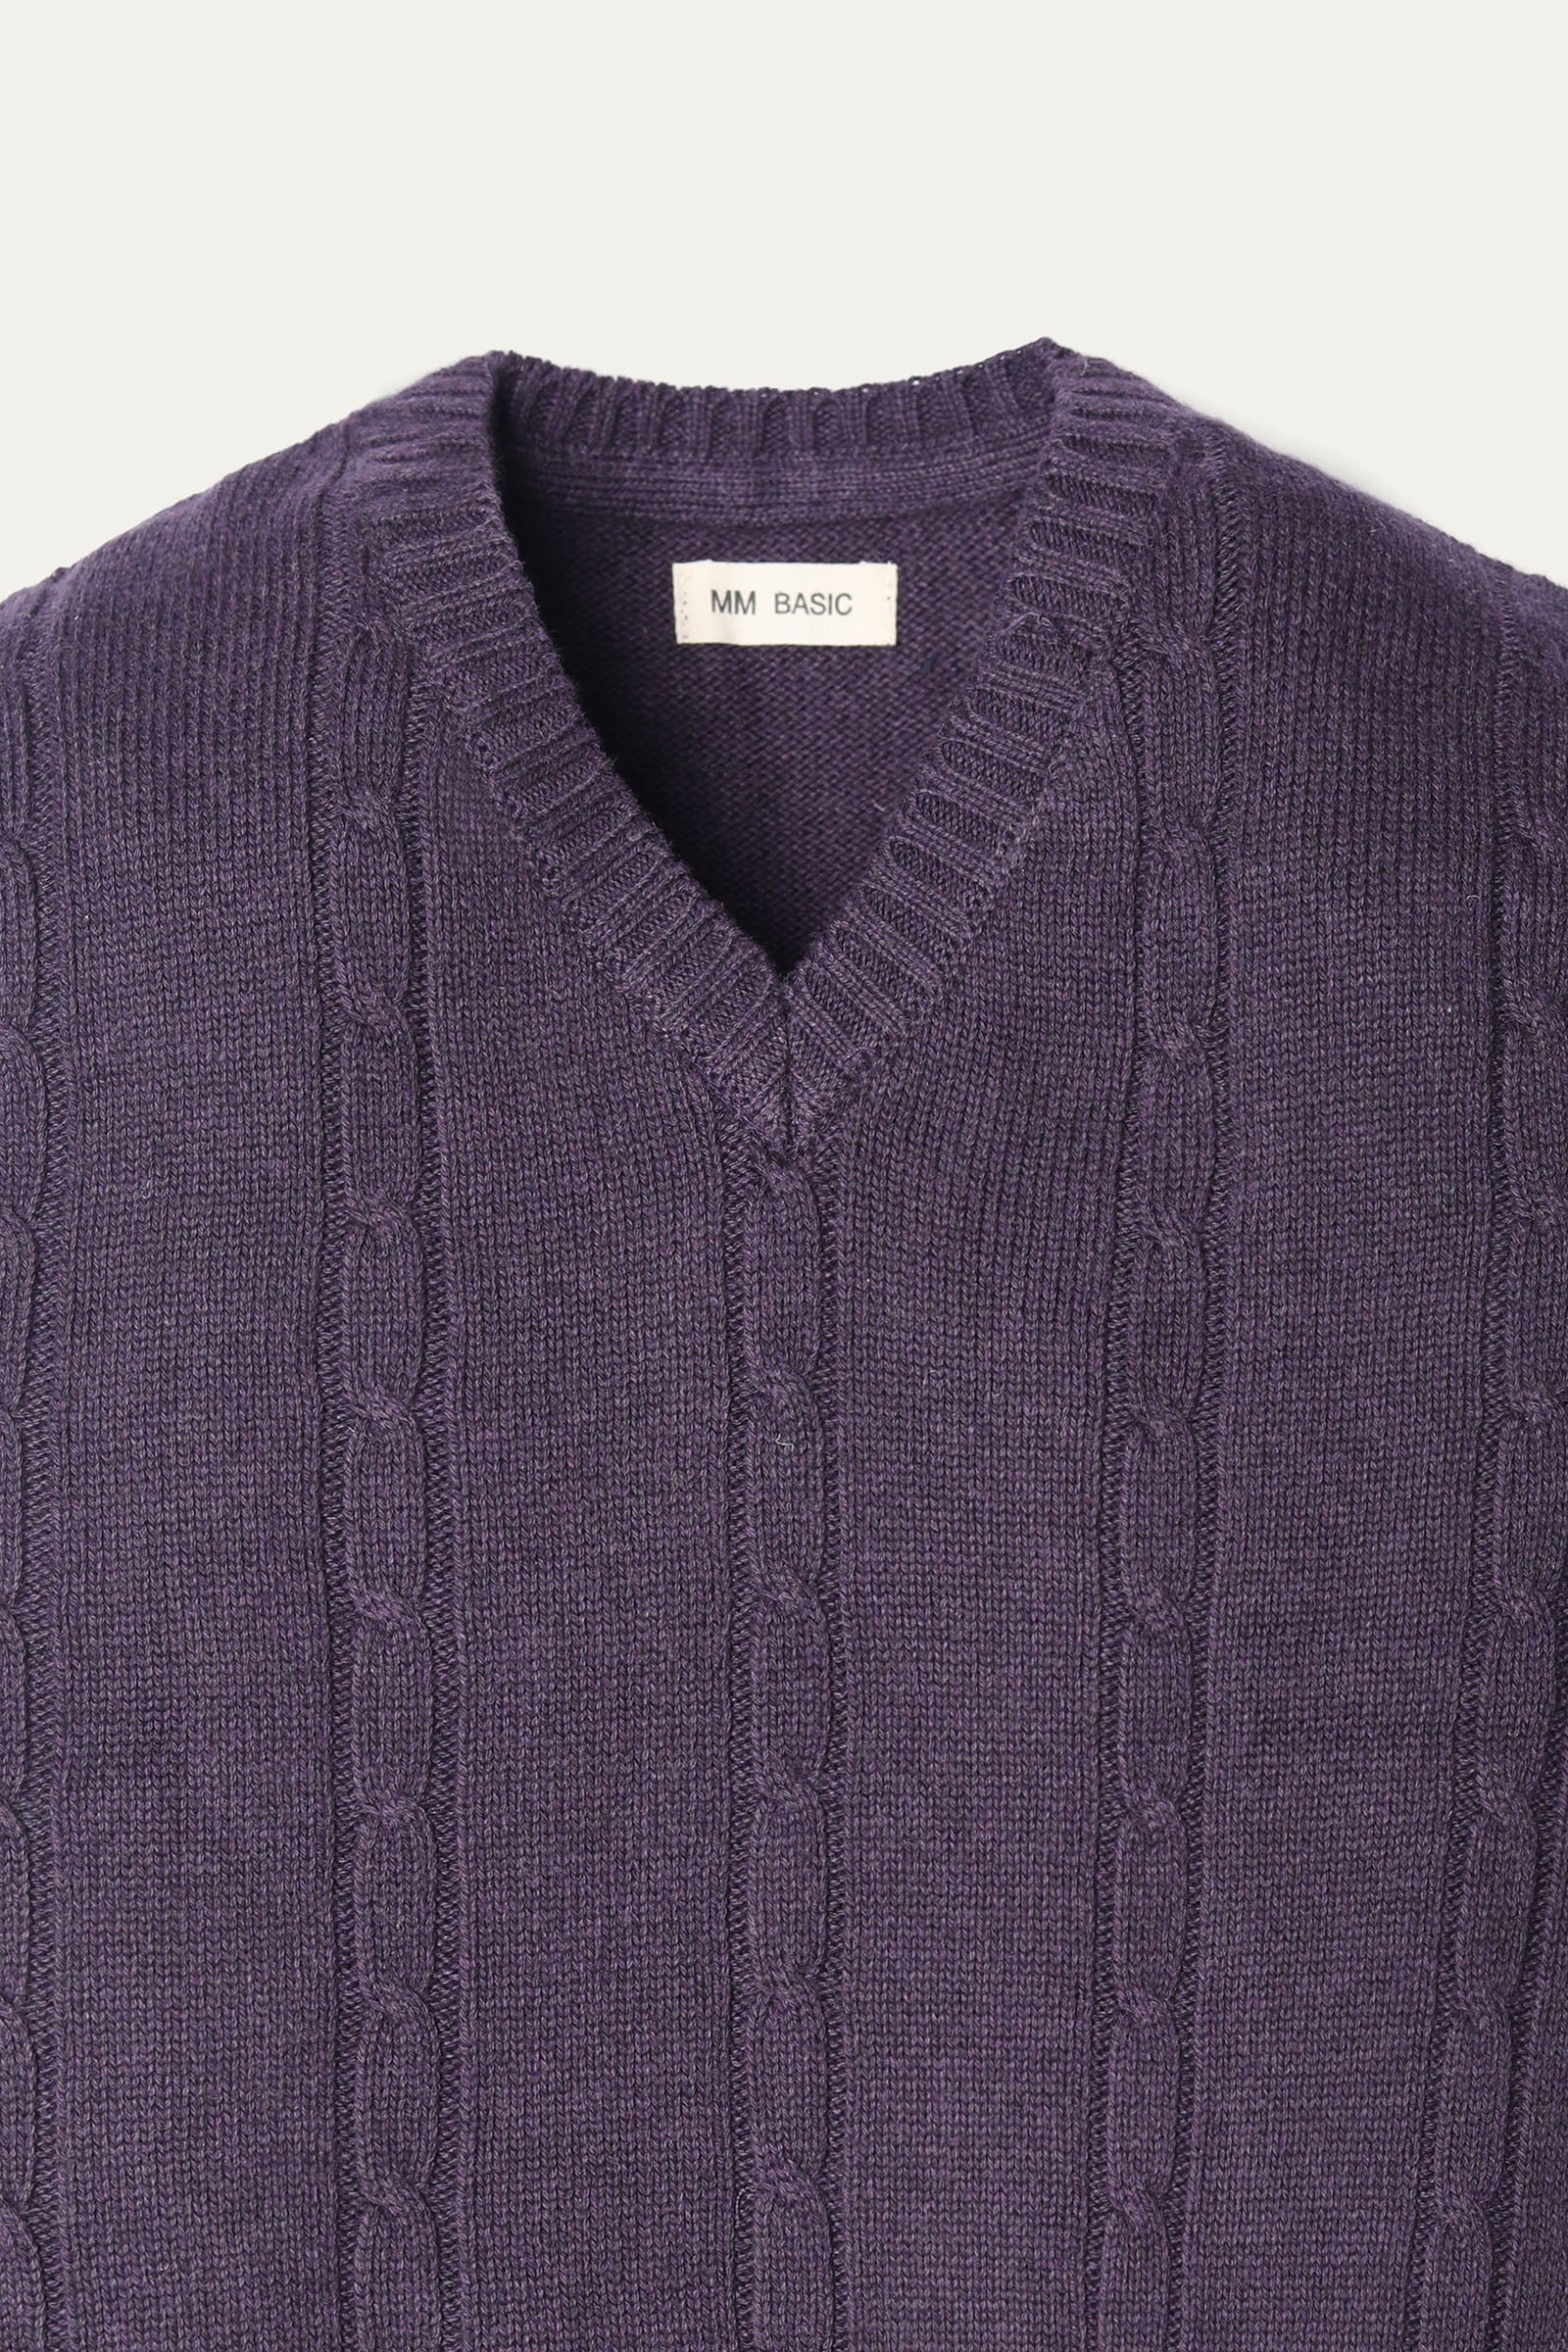 Sleeveless sweater (BASIC-SL-020)